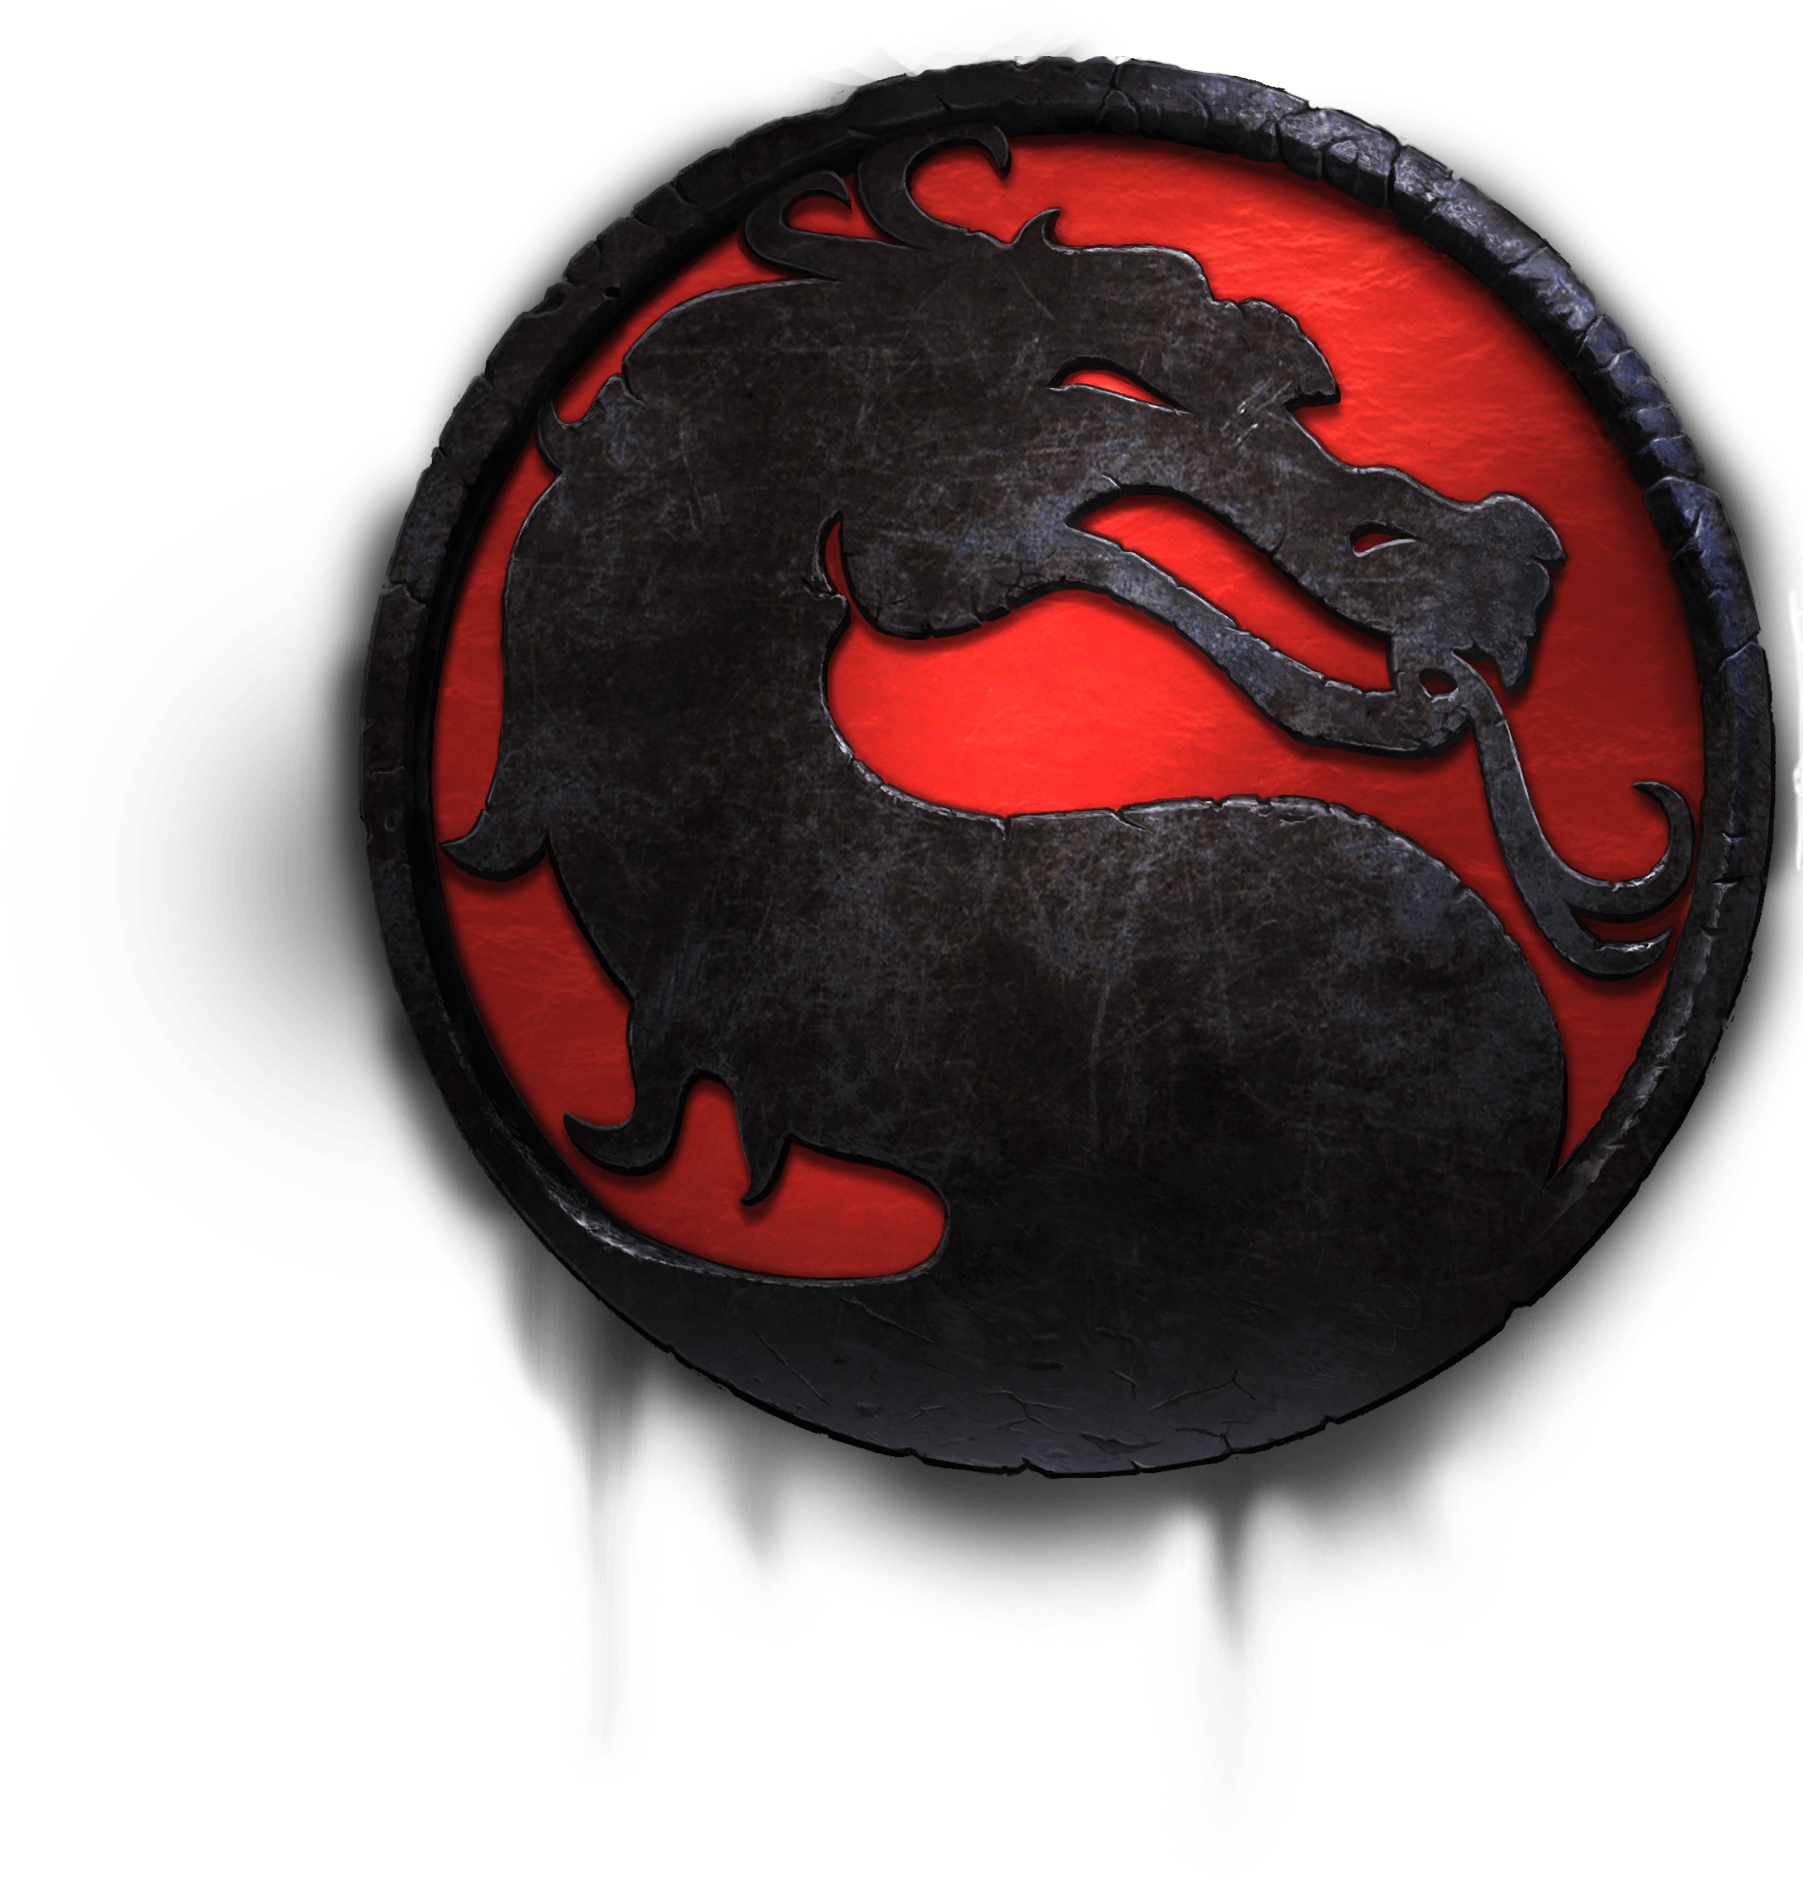 Mortal Kombat jeu vidéo PNG image image